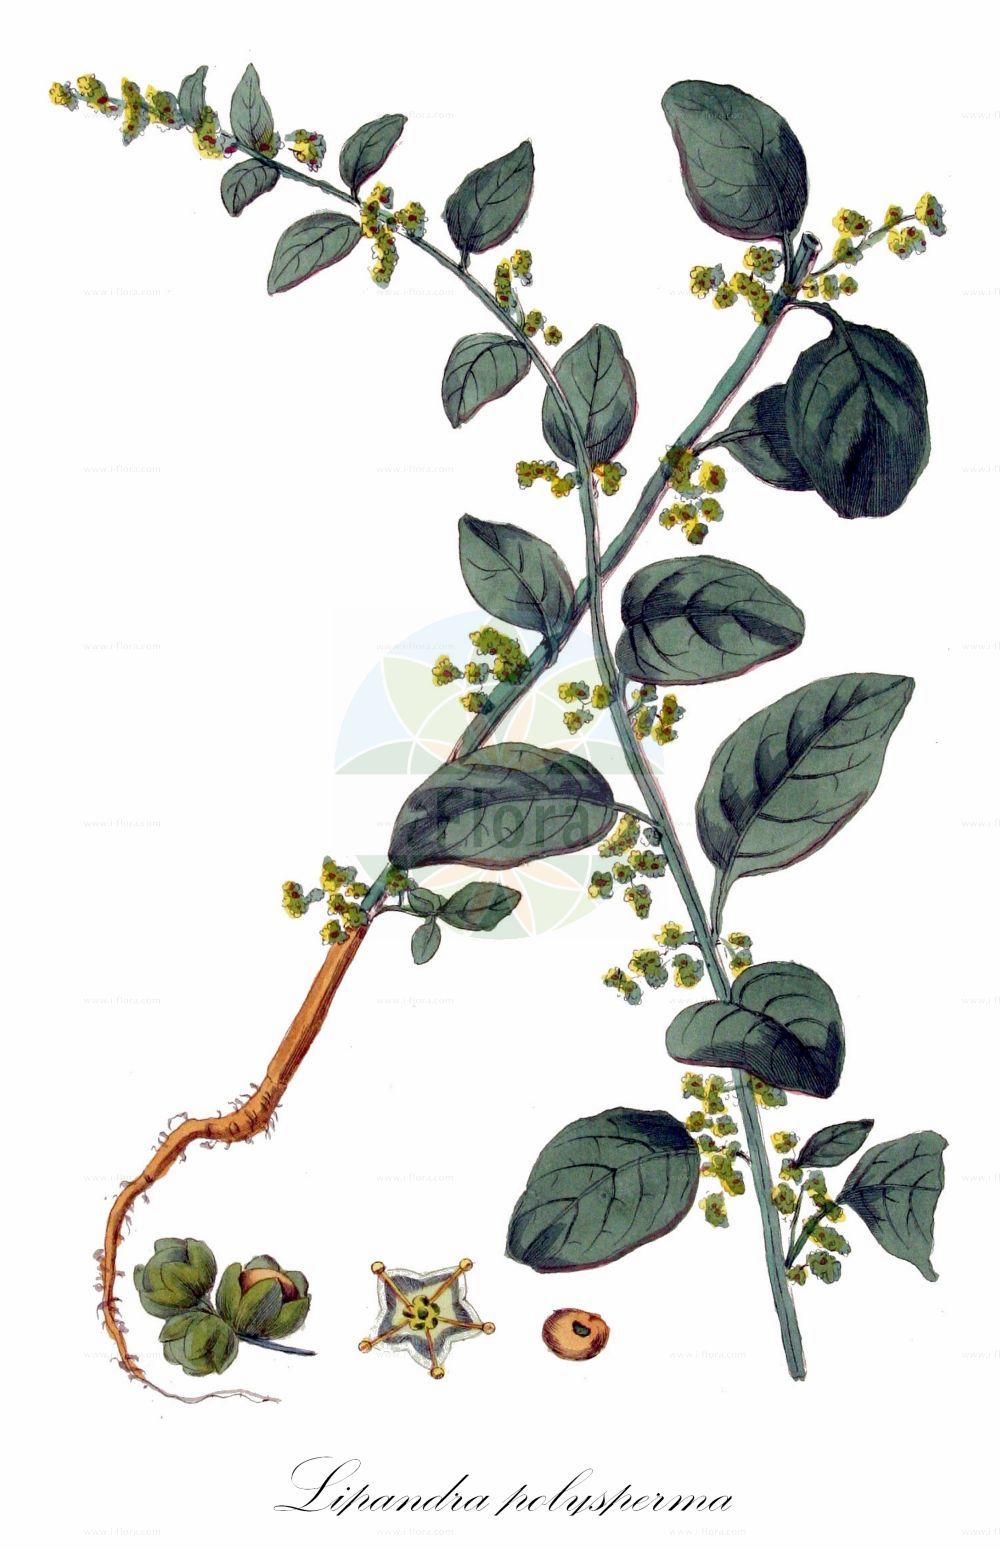 Historische Abbildung von Lipandra polysperma (Vielsamiger Gänsefuß - Many-seeded Goosefoot). Das Bild zeigt Blatt, Bluete, Frucht und Same. ---- Historical Drawing of Lipandra polysperma (Vielsamiger Gänsefuß - Many-seeded Goosefoot). The image is showing leaf, flower, fruit and seed.(Lipandra polysperma,Vielsamiger Gänsefuß,Many-seeded Goosefoot,Chenopodium acutifolium,Chenopodium polyspermum,Lipandra polysperma,Vielsamiger Gaensefuss,Many-seeded Goosefoot,Allseed,Manyseed Goosefoot,Lipandra,Amaranthaceae,Fuchsschwanzgewächse,Pigweed family,Blatt,Bluete,Frucht,Same,leaf,flower,fruit,seed,Kops (1800-1934))